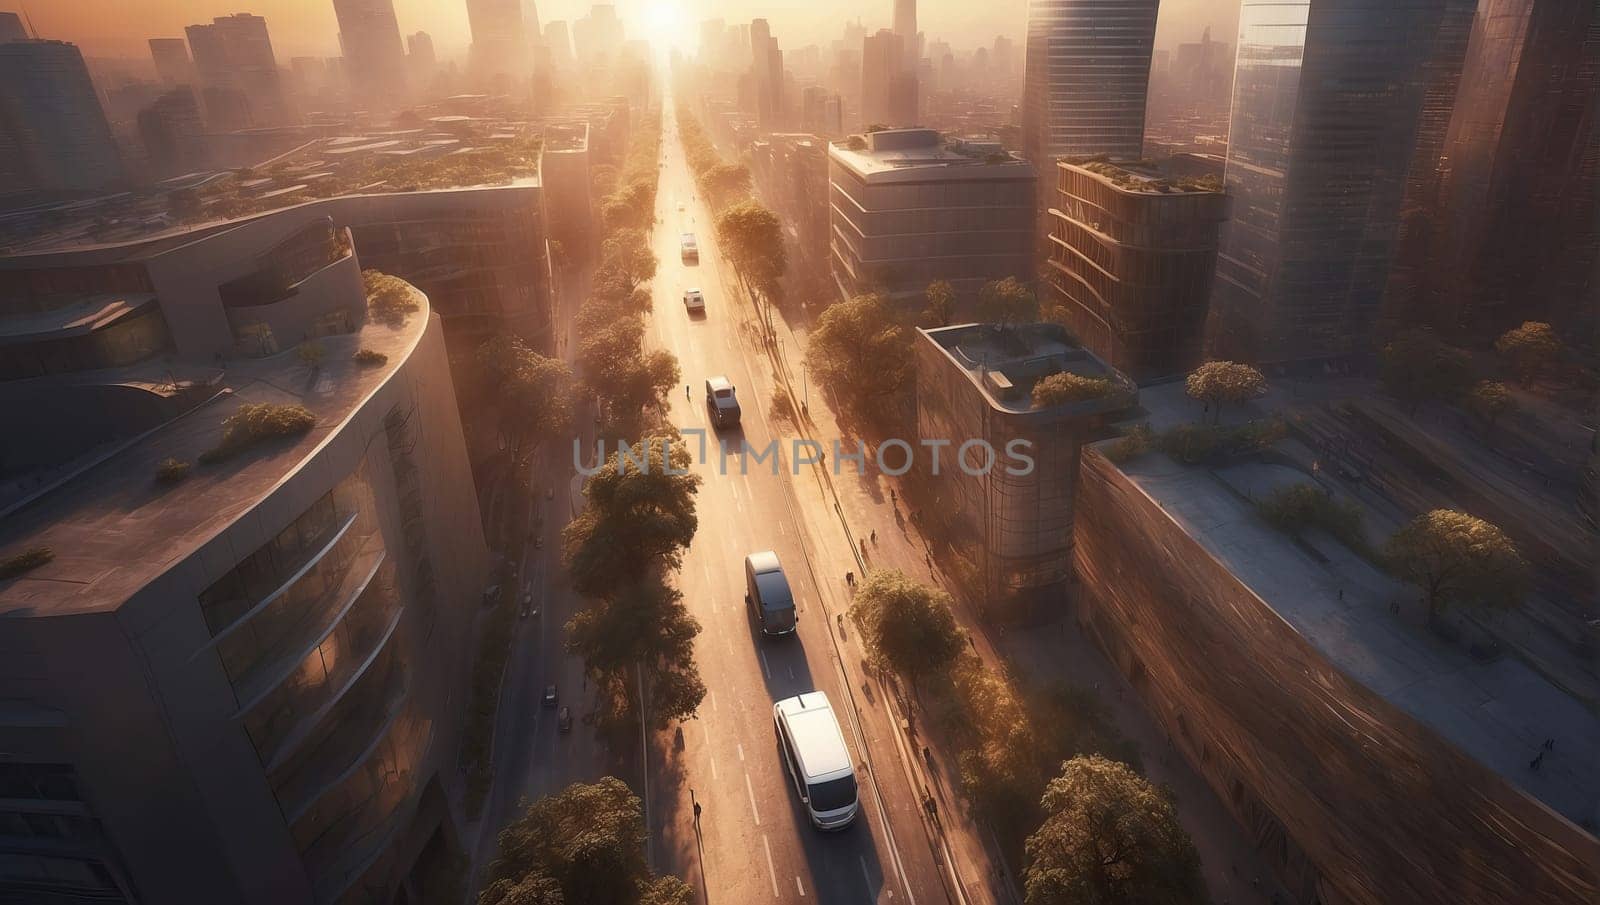 Sunrise over the metropolis. AI generated